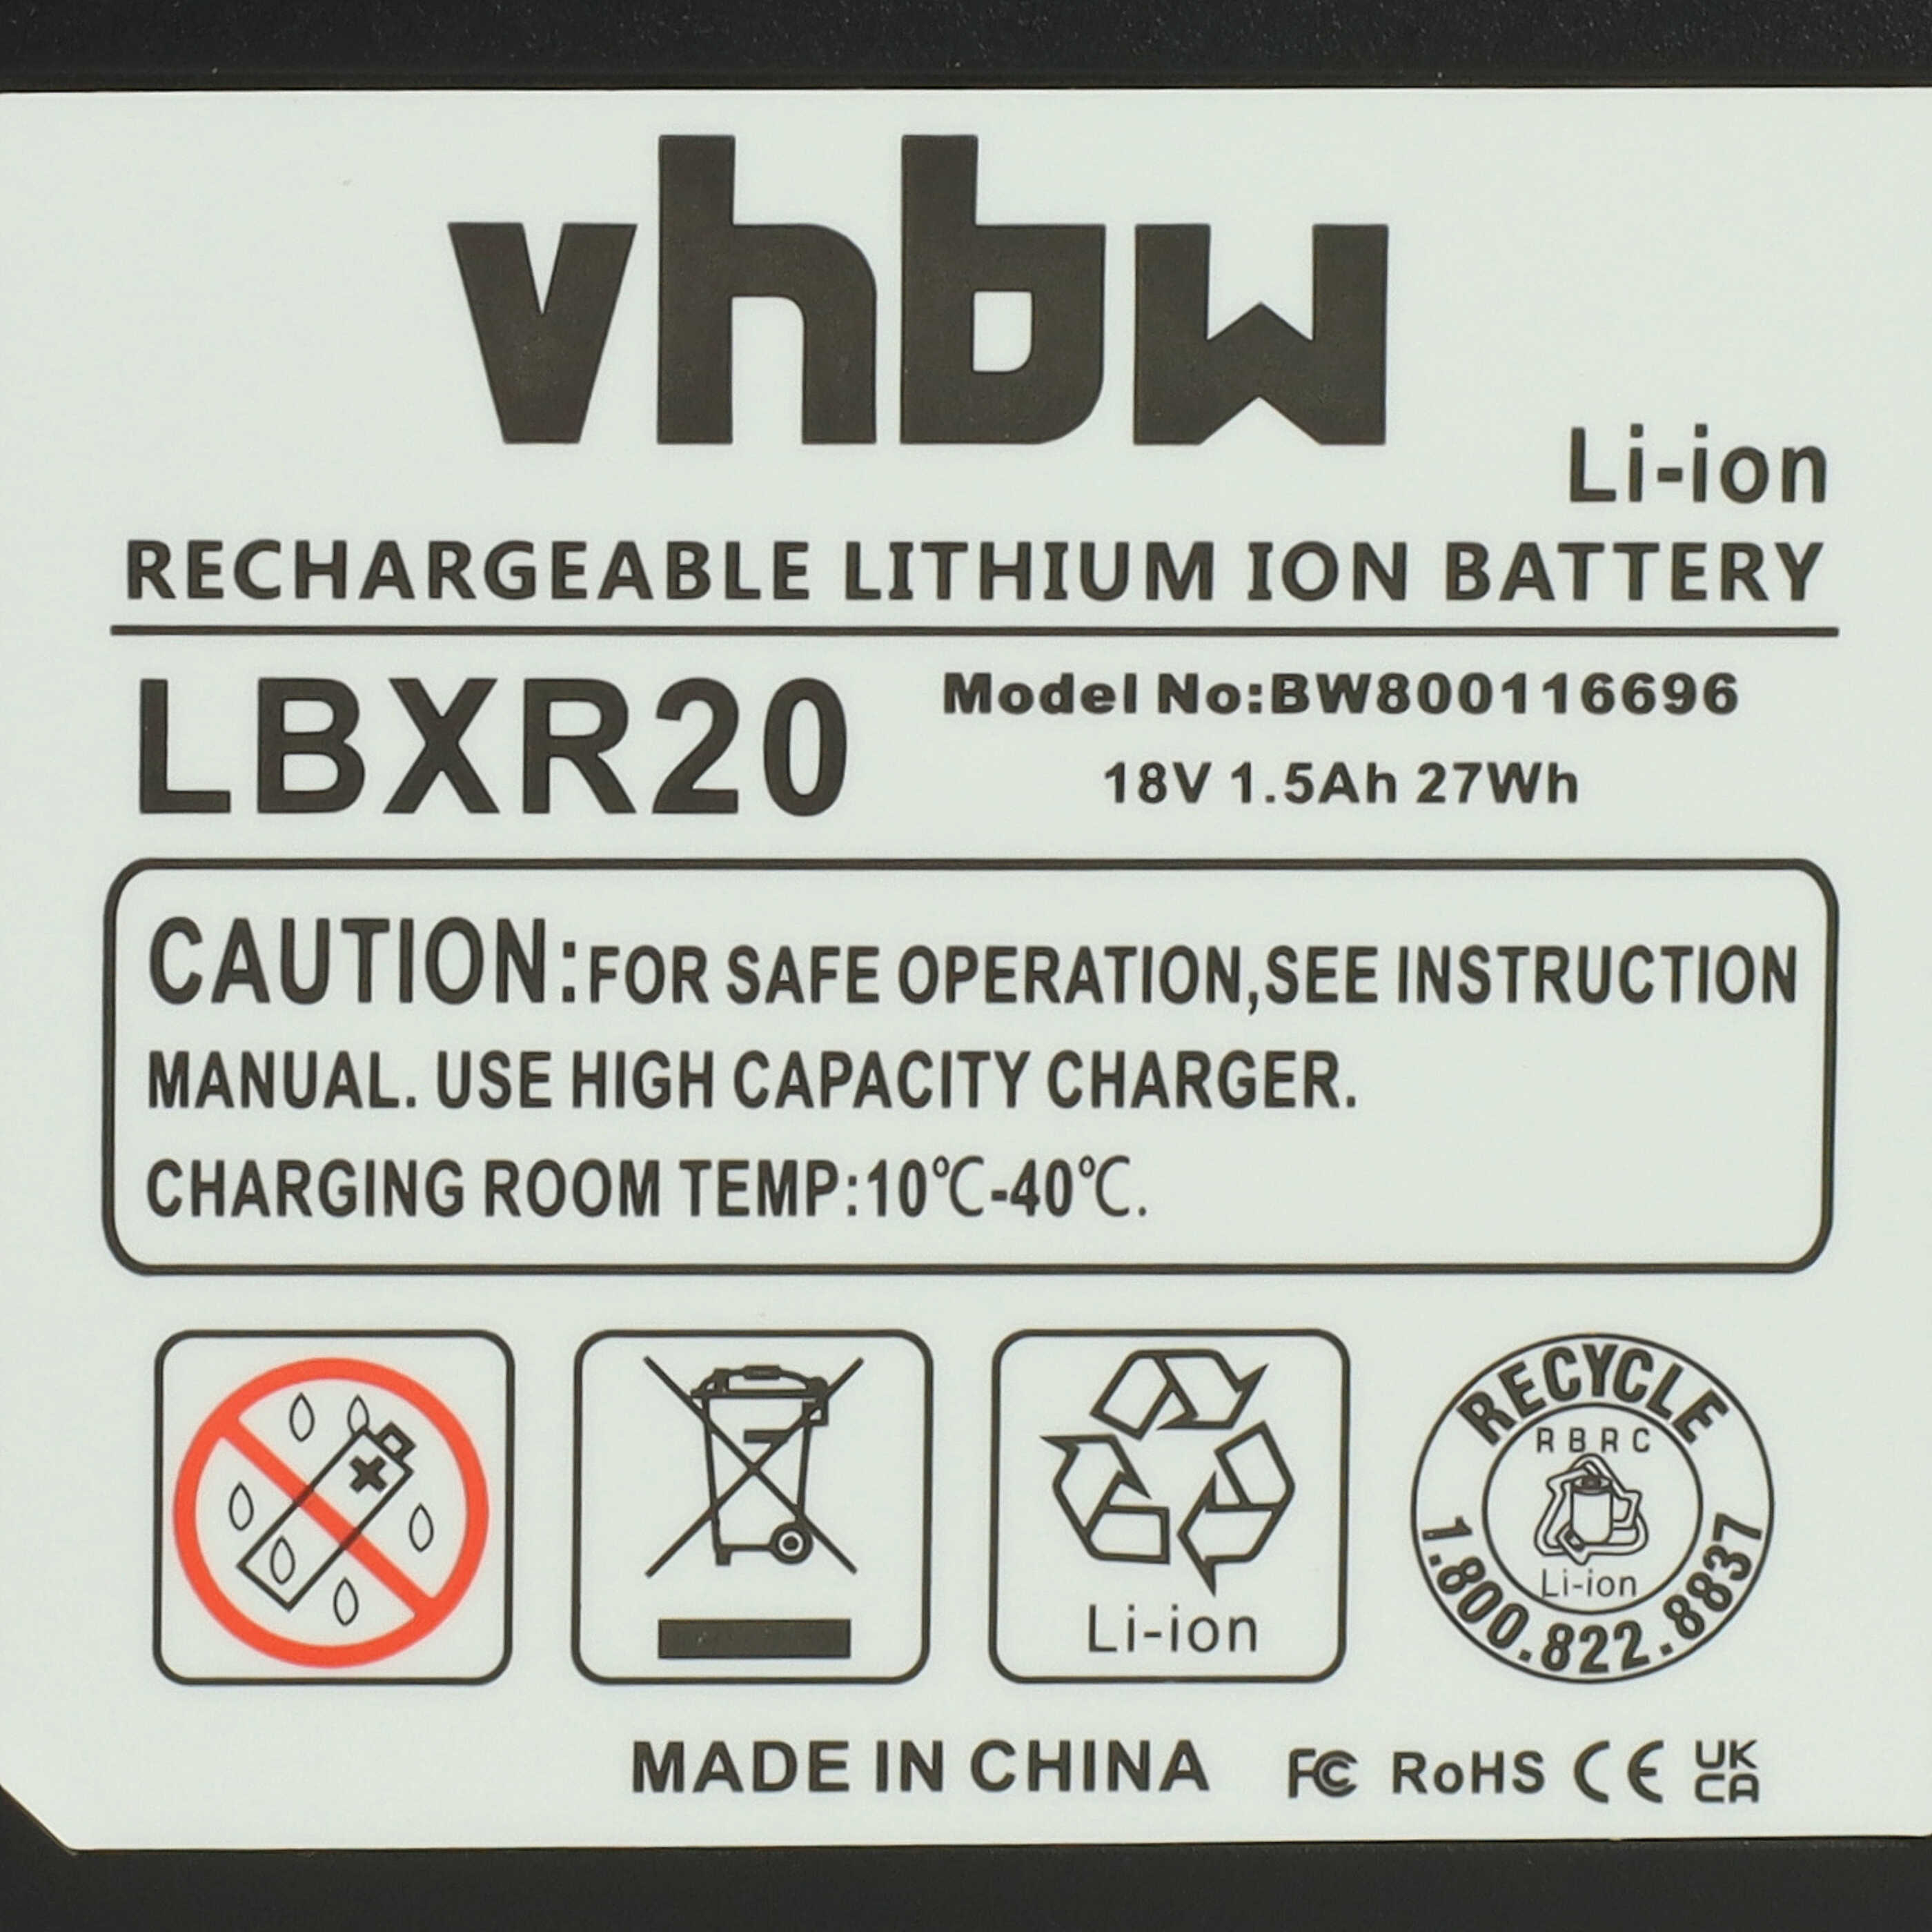 Akumulator do elektronarzędzi zamiennik Black & Decker BL1318, BL1518, BL1518-XJ - 1500 mAh, 18 V, Li-Ion